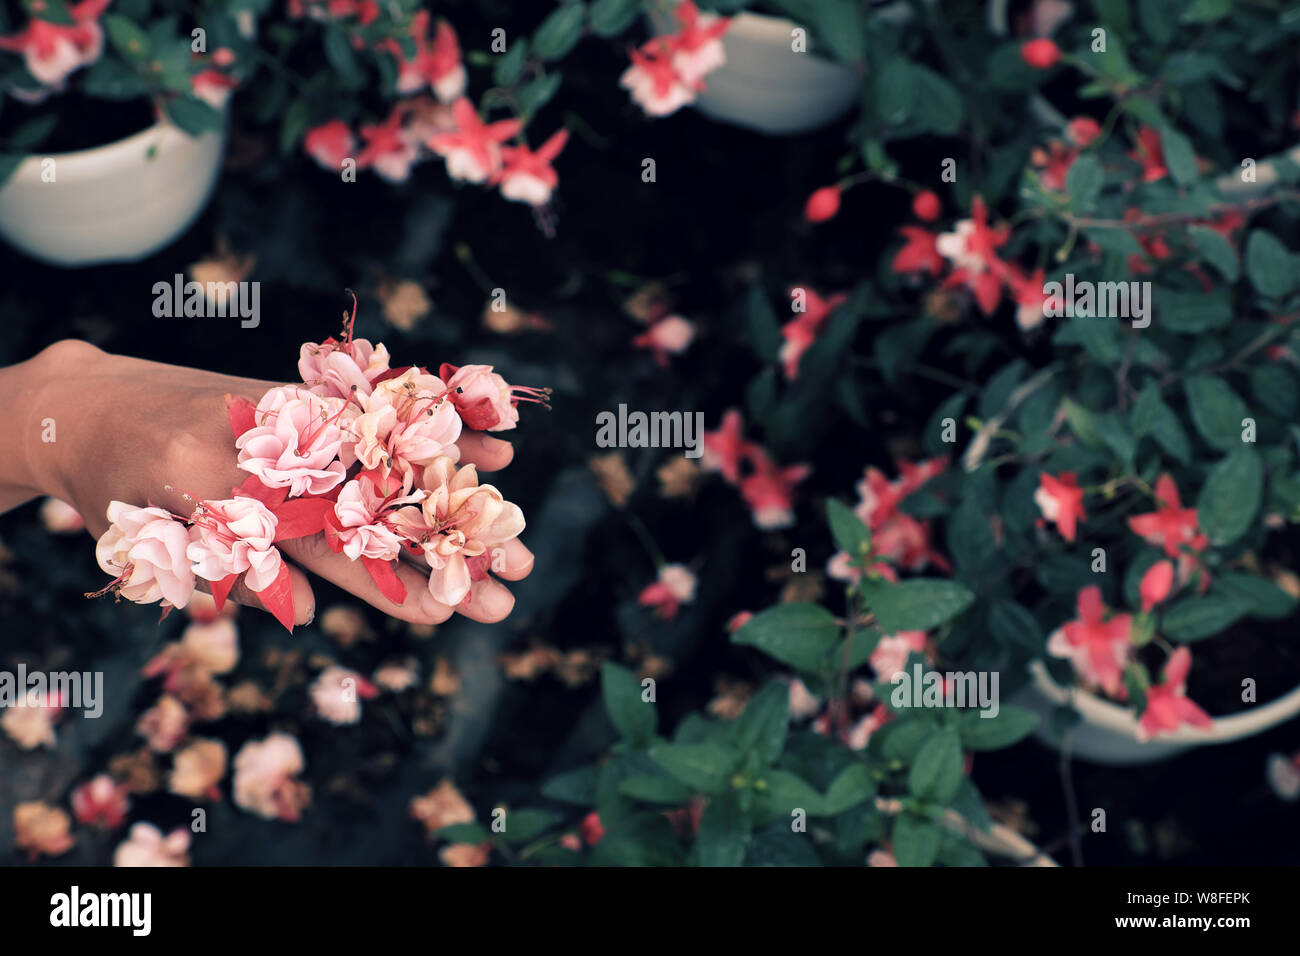 Close up hardy rosa fucsia fiori sulla donna mano dalla vista superiore con sfocato piante ornamentali background in giardino Foto Stock